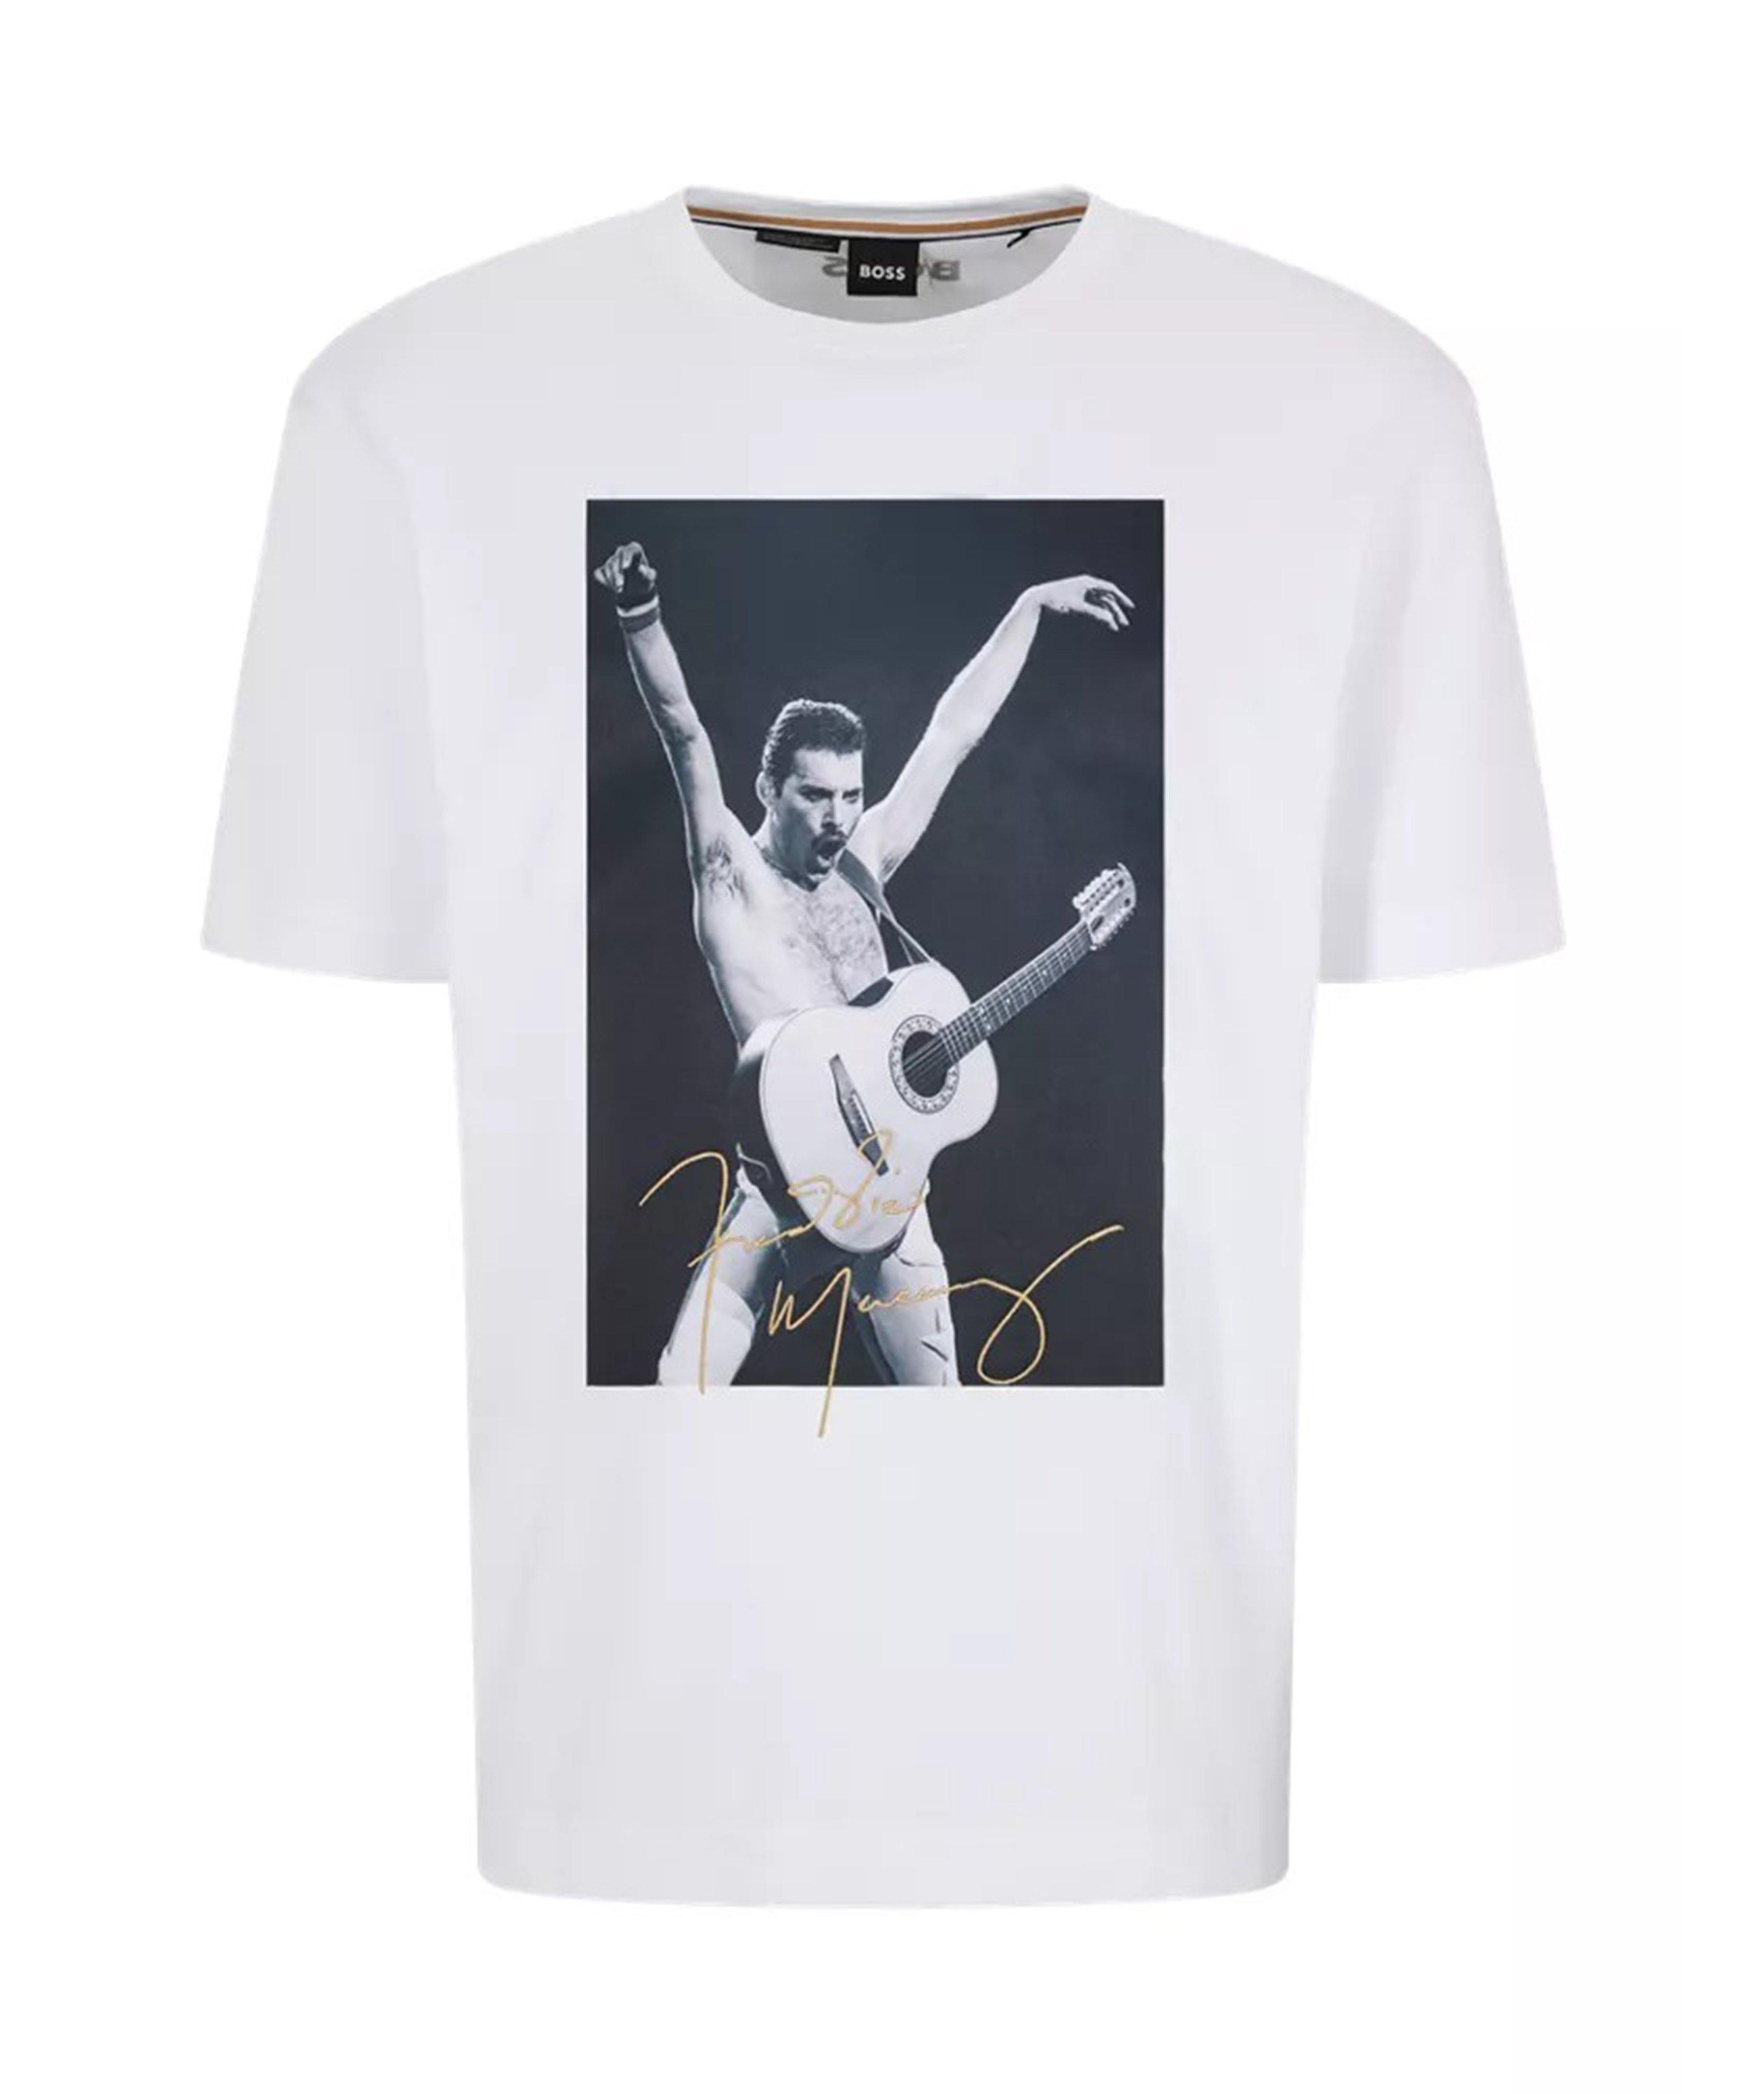 T-shirt imprimé en coton, collection Freddie Mercury image 0